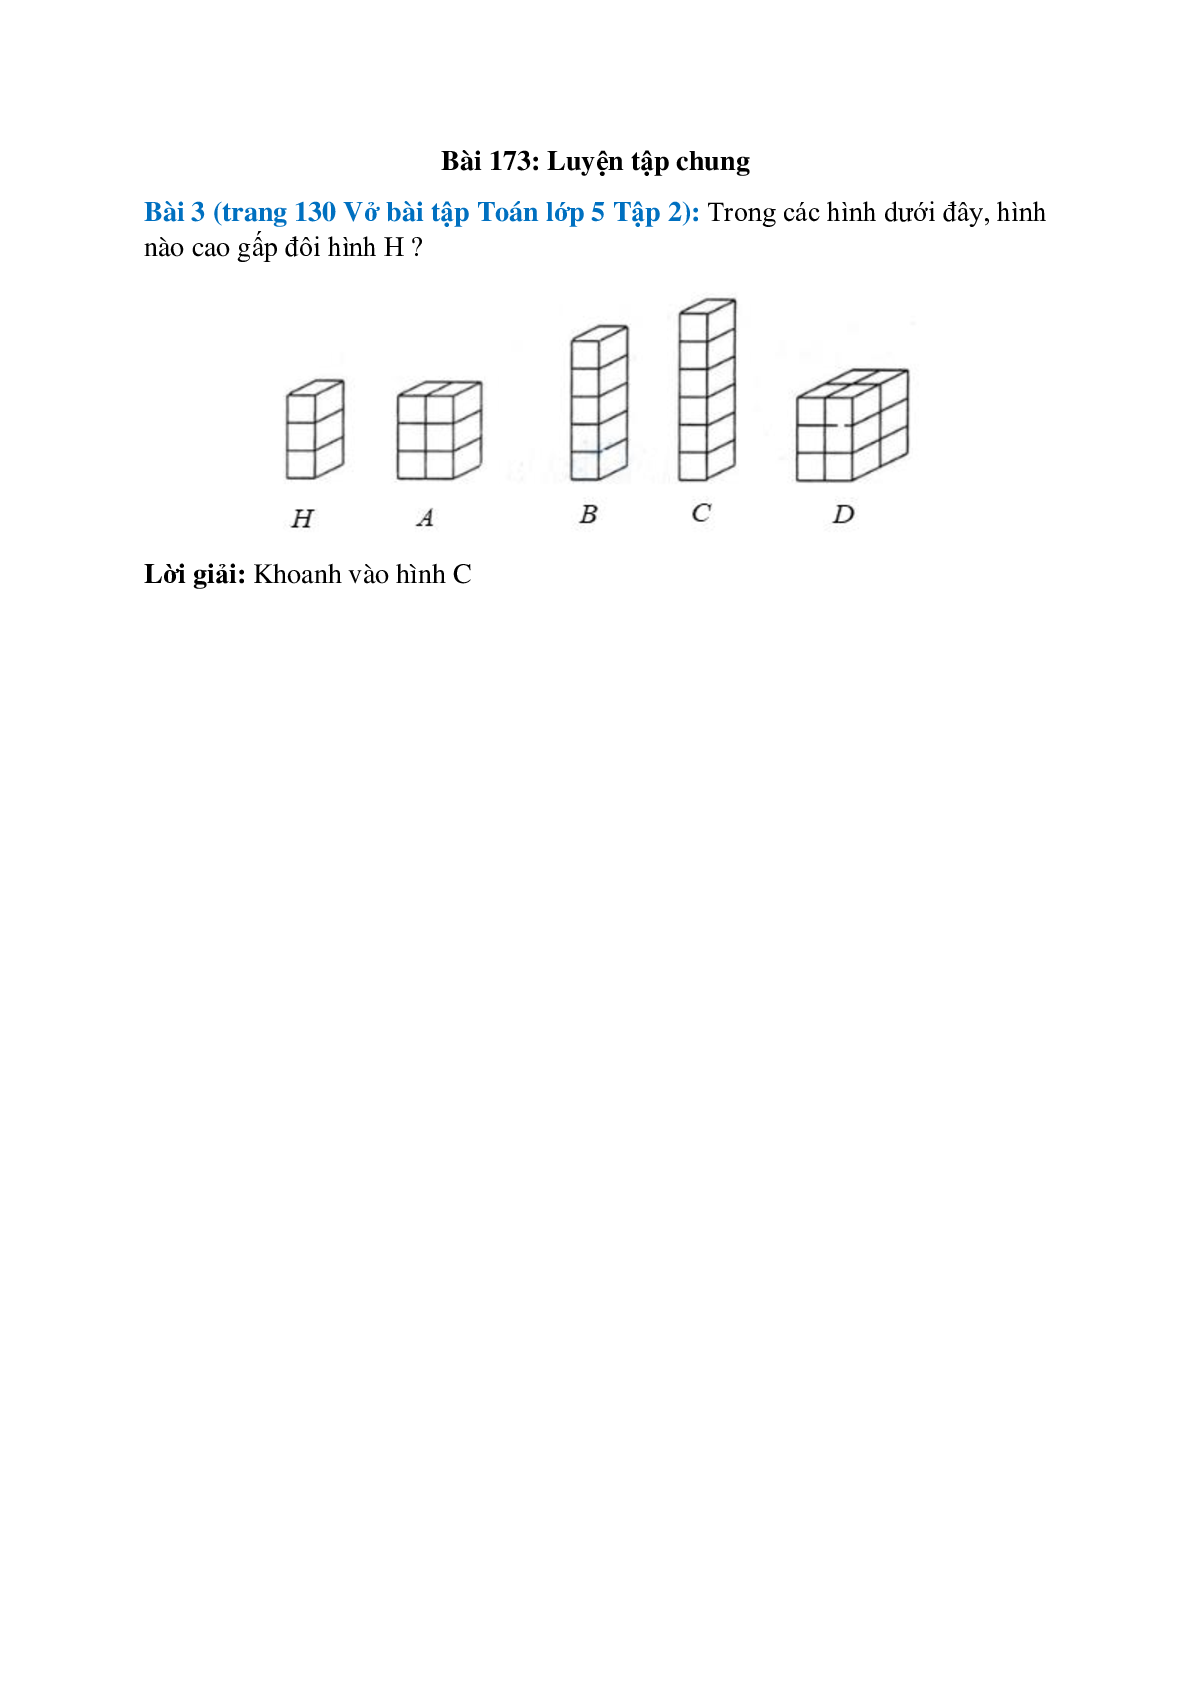 Trong các hình dưới đây, hình nào cao gấp đôi hình H (trang 1)